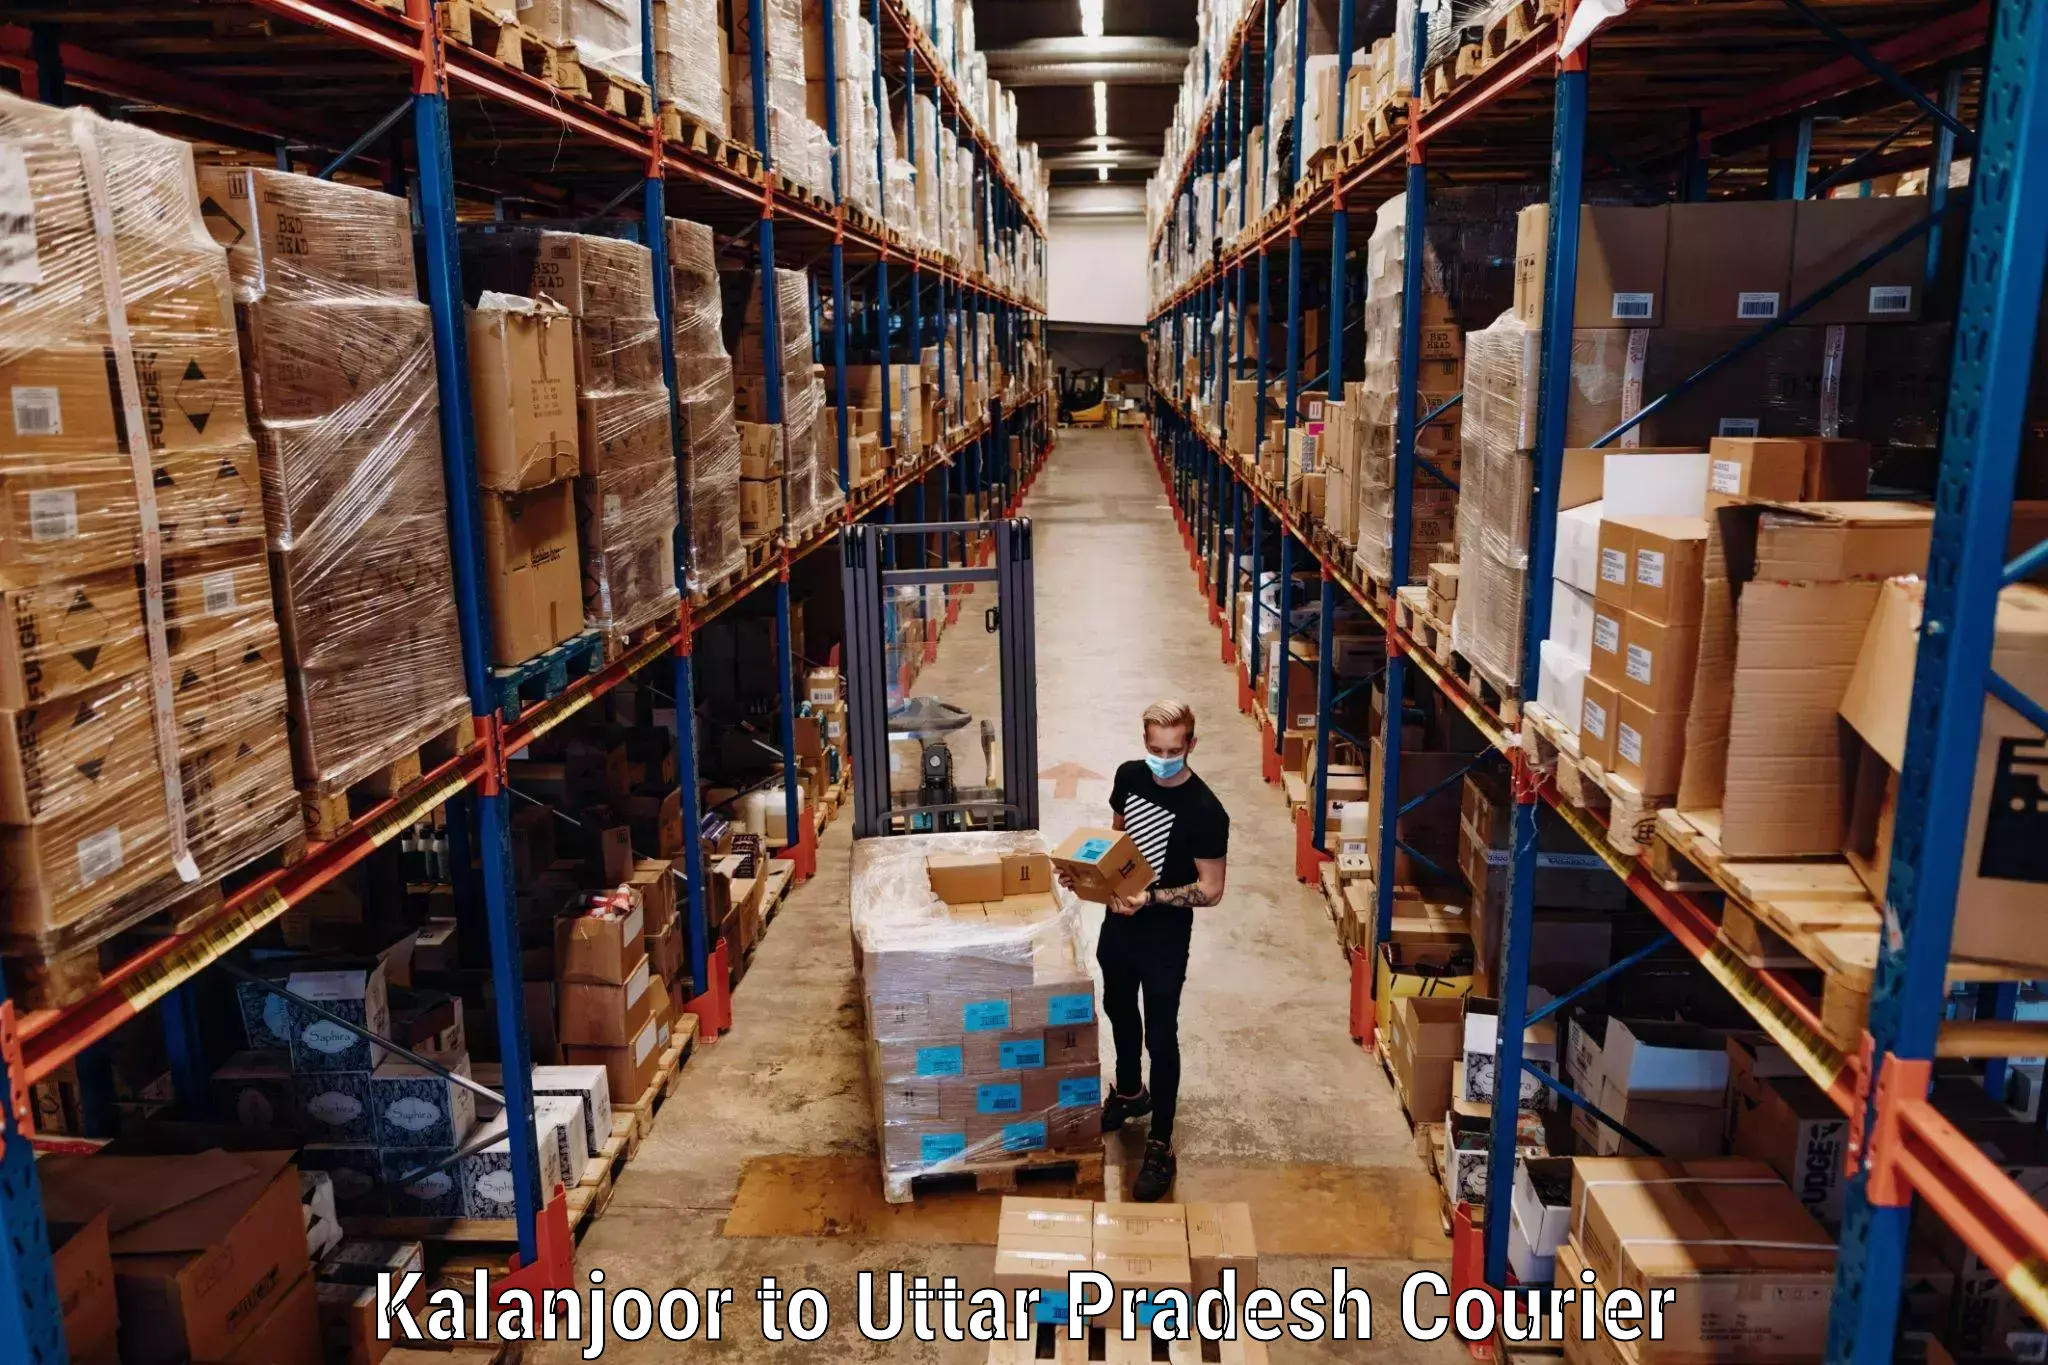 Baggage transport innovation Kalanjoor to Dostpur